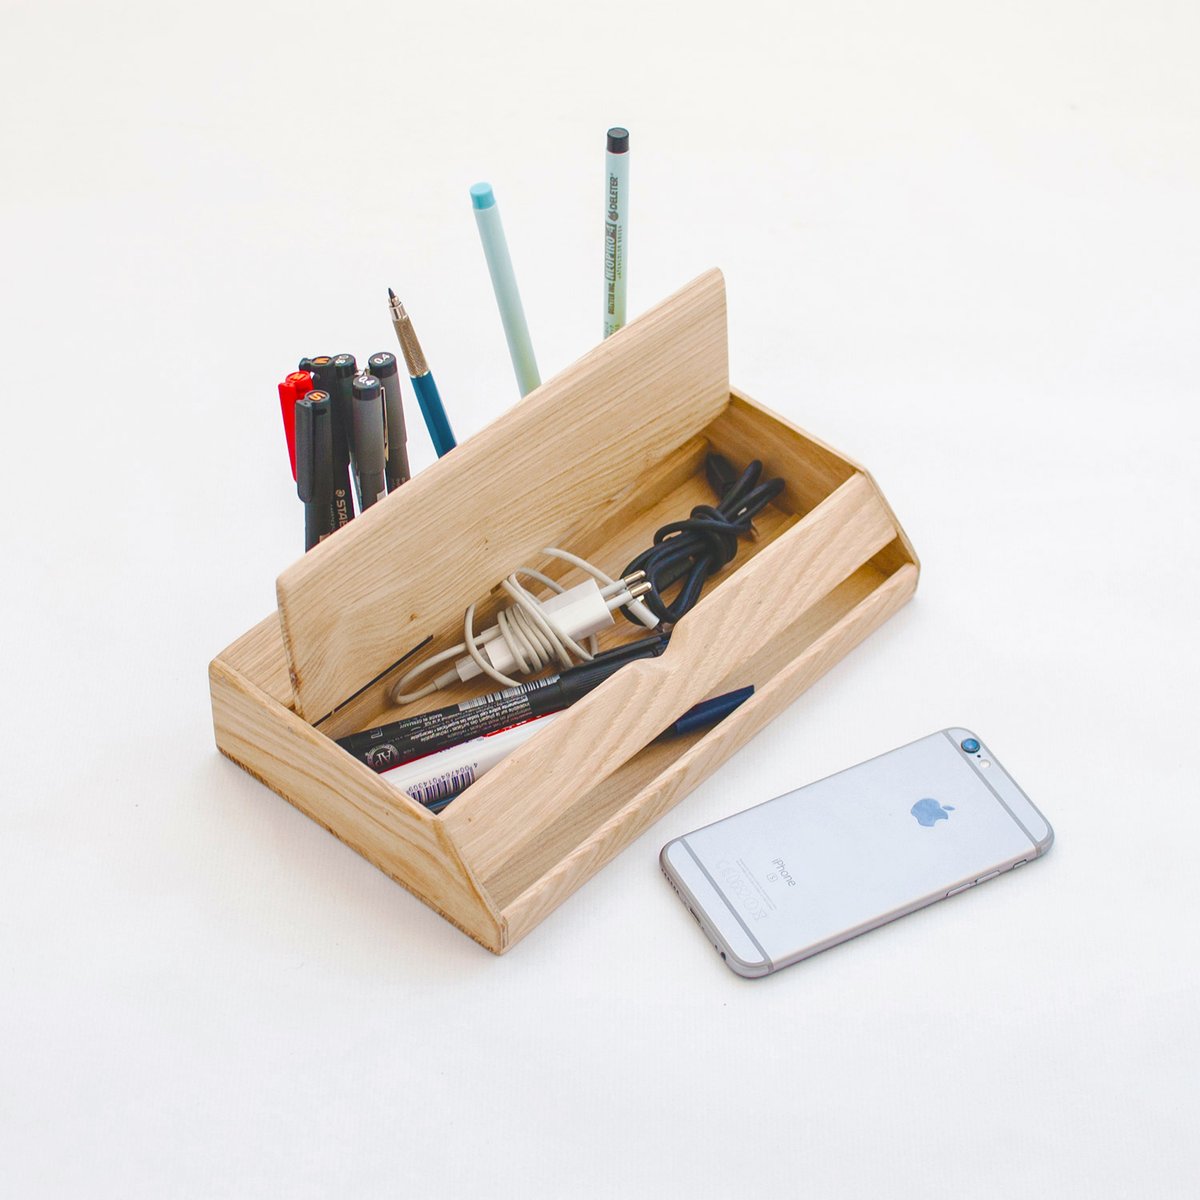 Handmade Estuche Wooden Desk Organizer and Smartphone ...